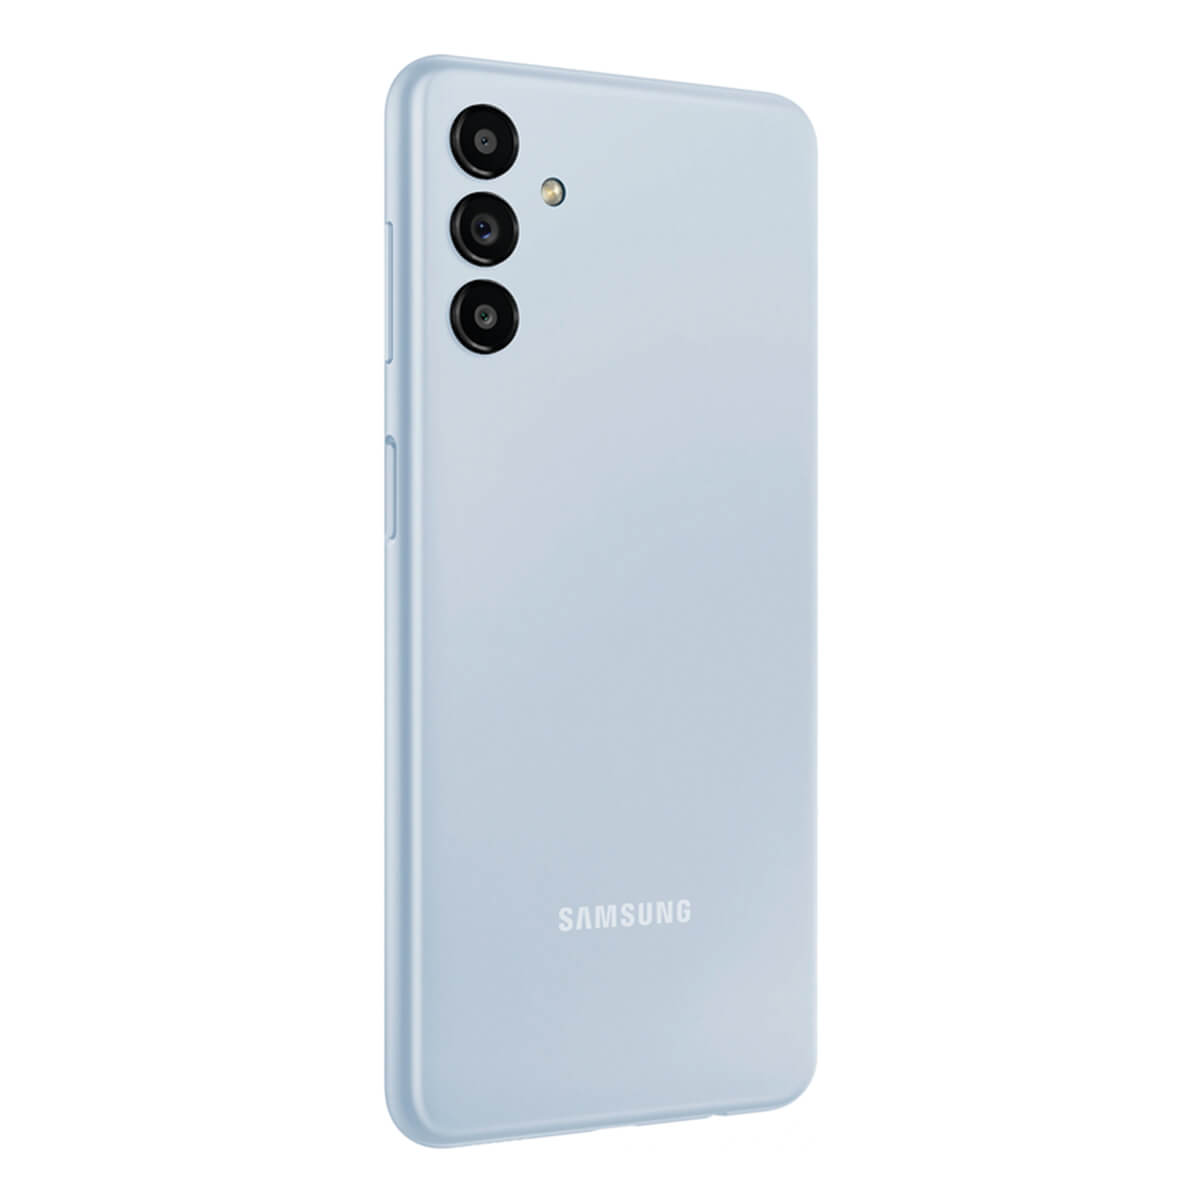 128 SAMSUNG GB SIM A13 Blau Galaxy DS 128GB Dual light 5G blue